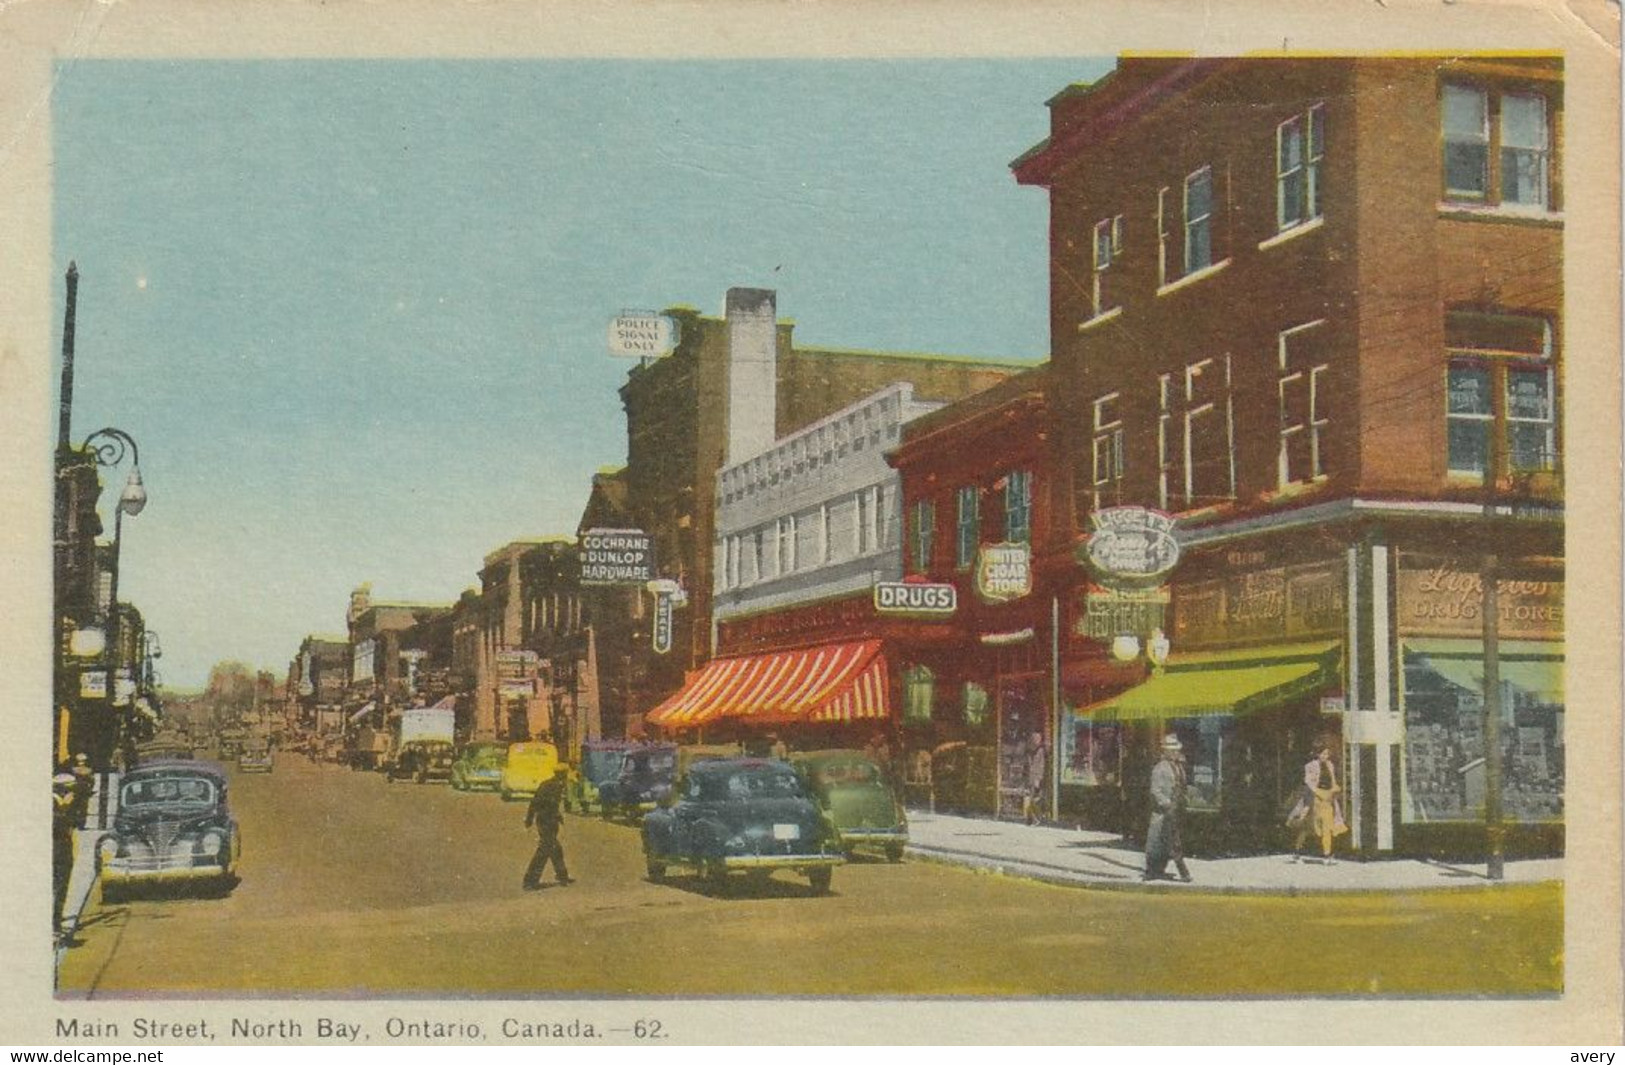 Main Street, North Bay, Ontario - North Bay